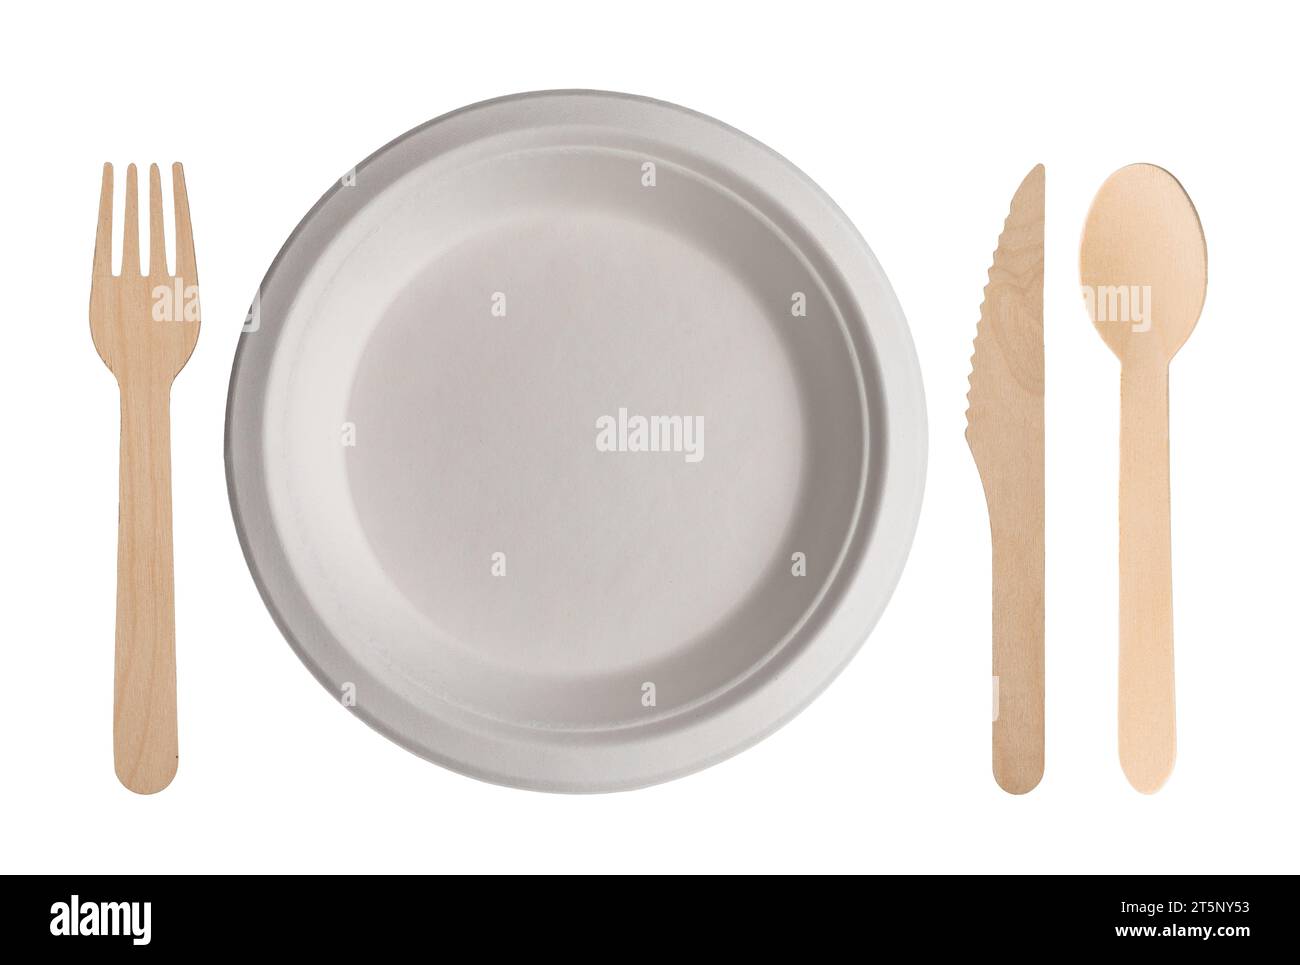 Set de table avec assiette en carton blanc avec couverts en bois à côté. Assiette jetable biodégradable, fourchette, cuillère et couteau isolé sur blanc avec clip Banque D'Images